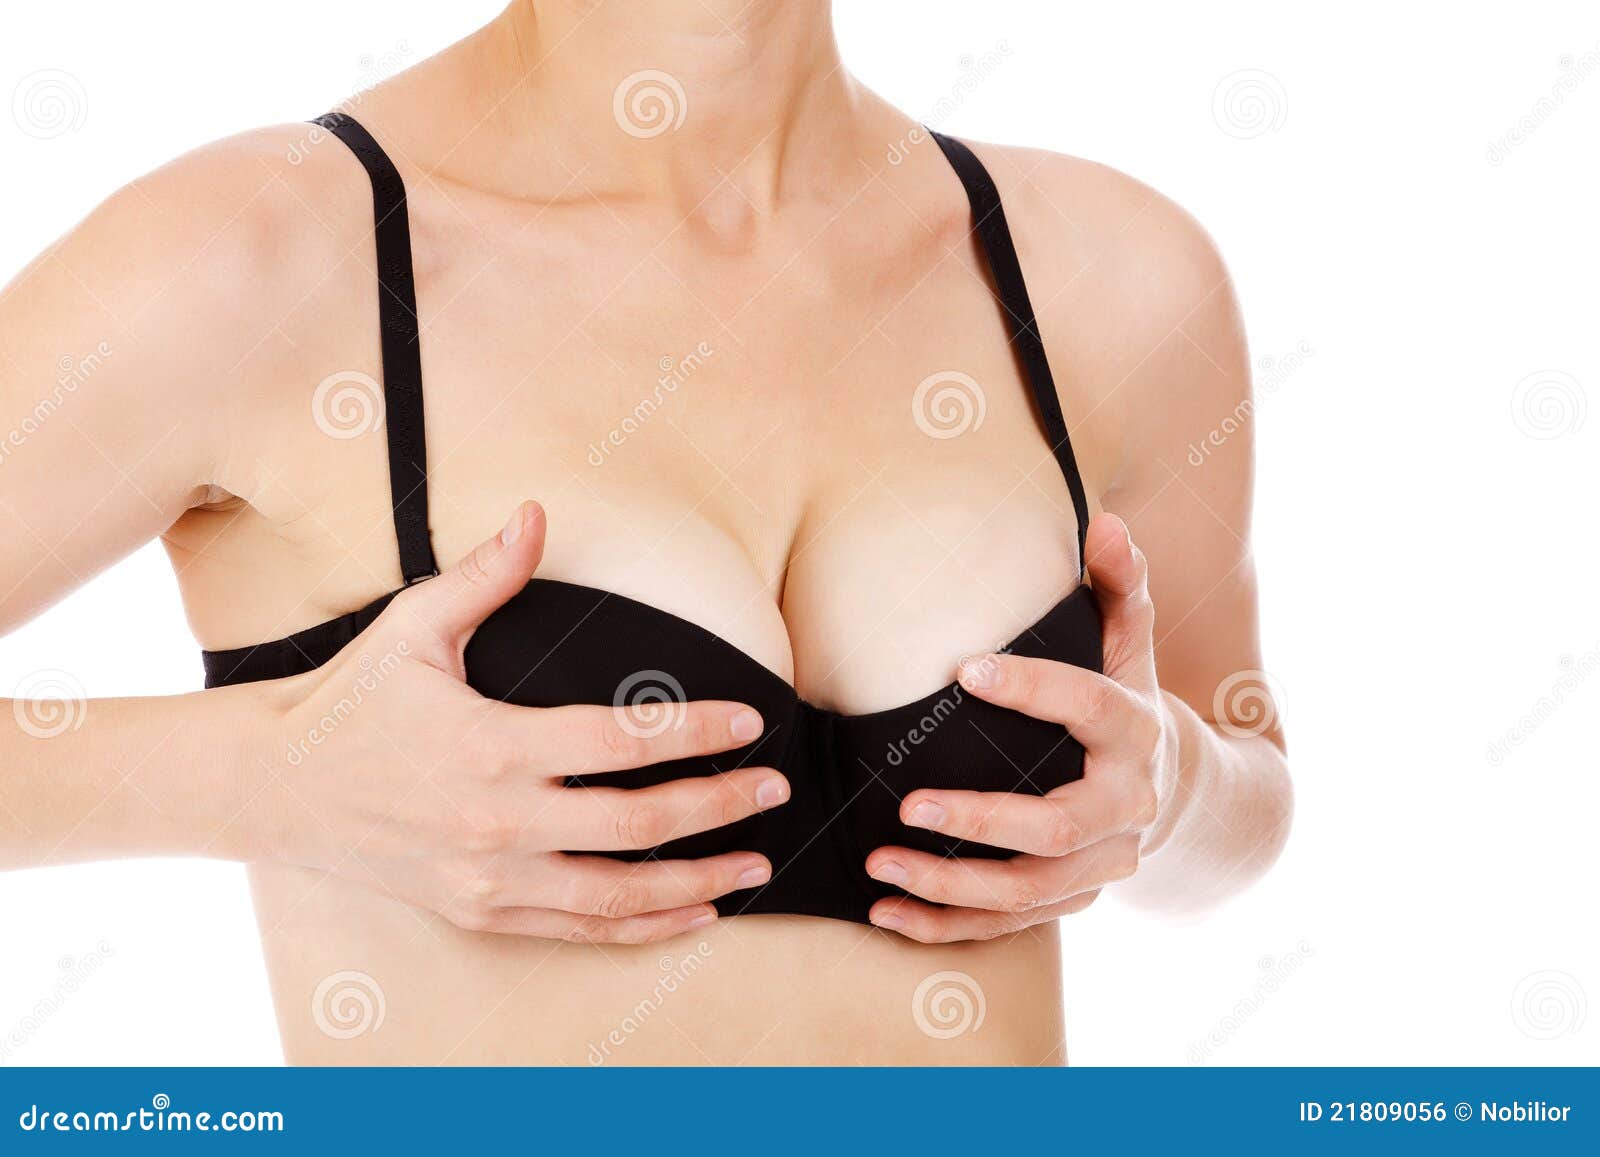 форум все о женской груди фото 12